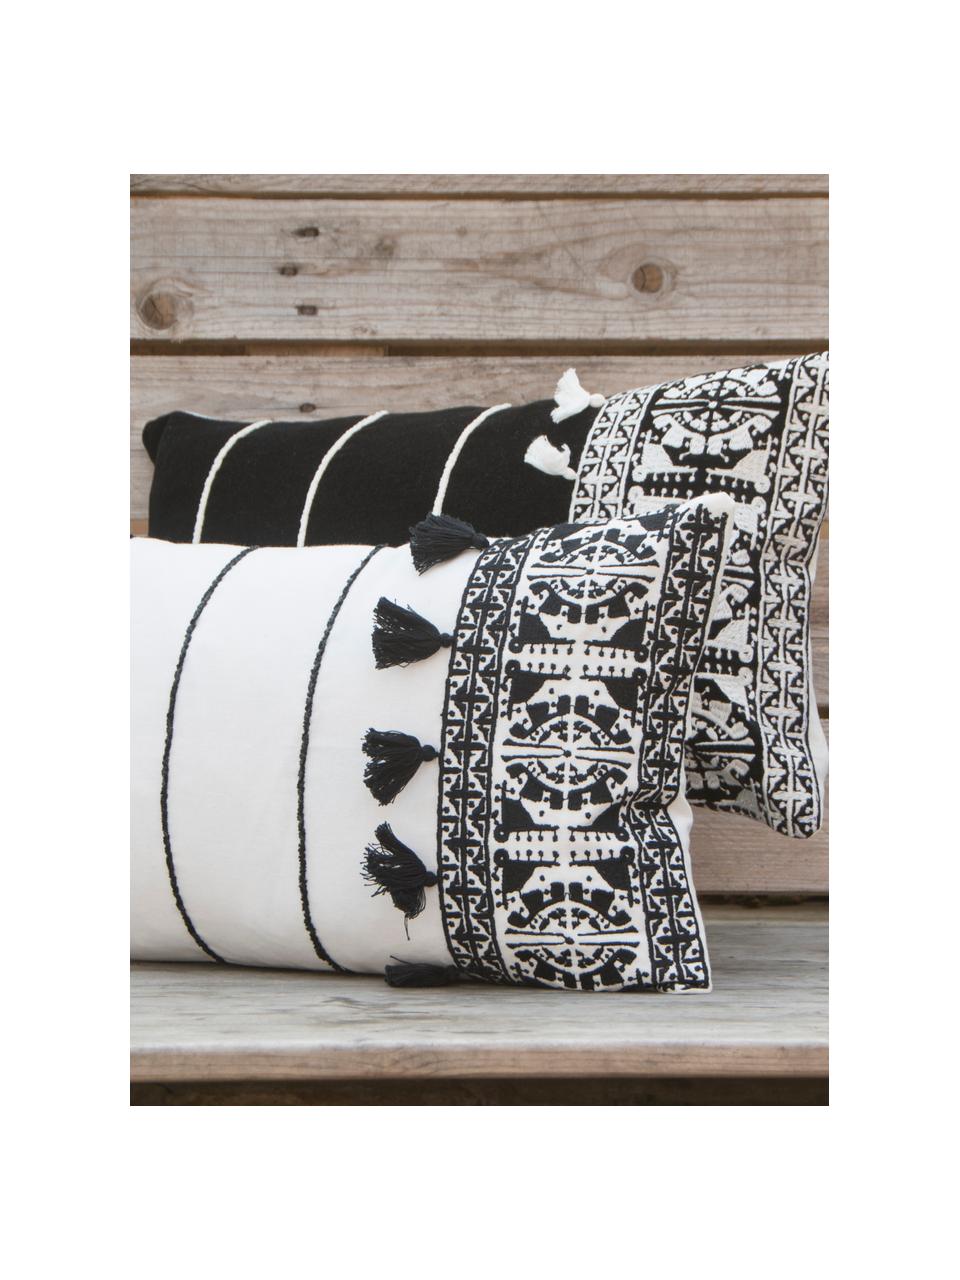 Haftowana poszewka na poduszkę z chwostami Neo Berbère, 100% bawełna, Biały, czarny, S 30 x D 50 cm